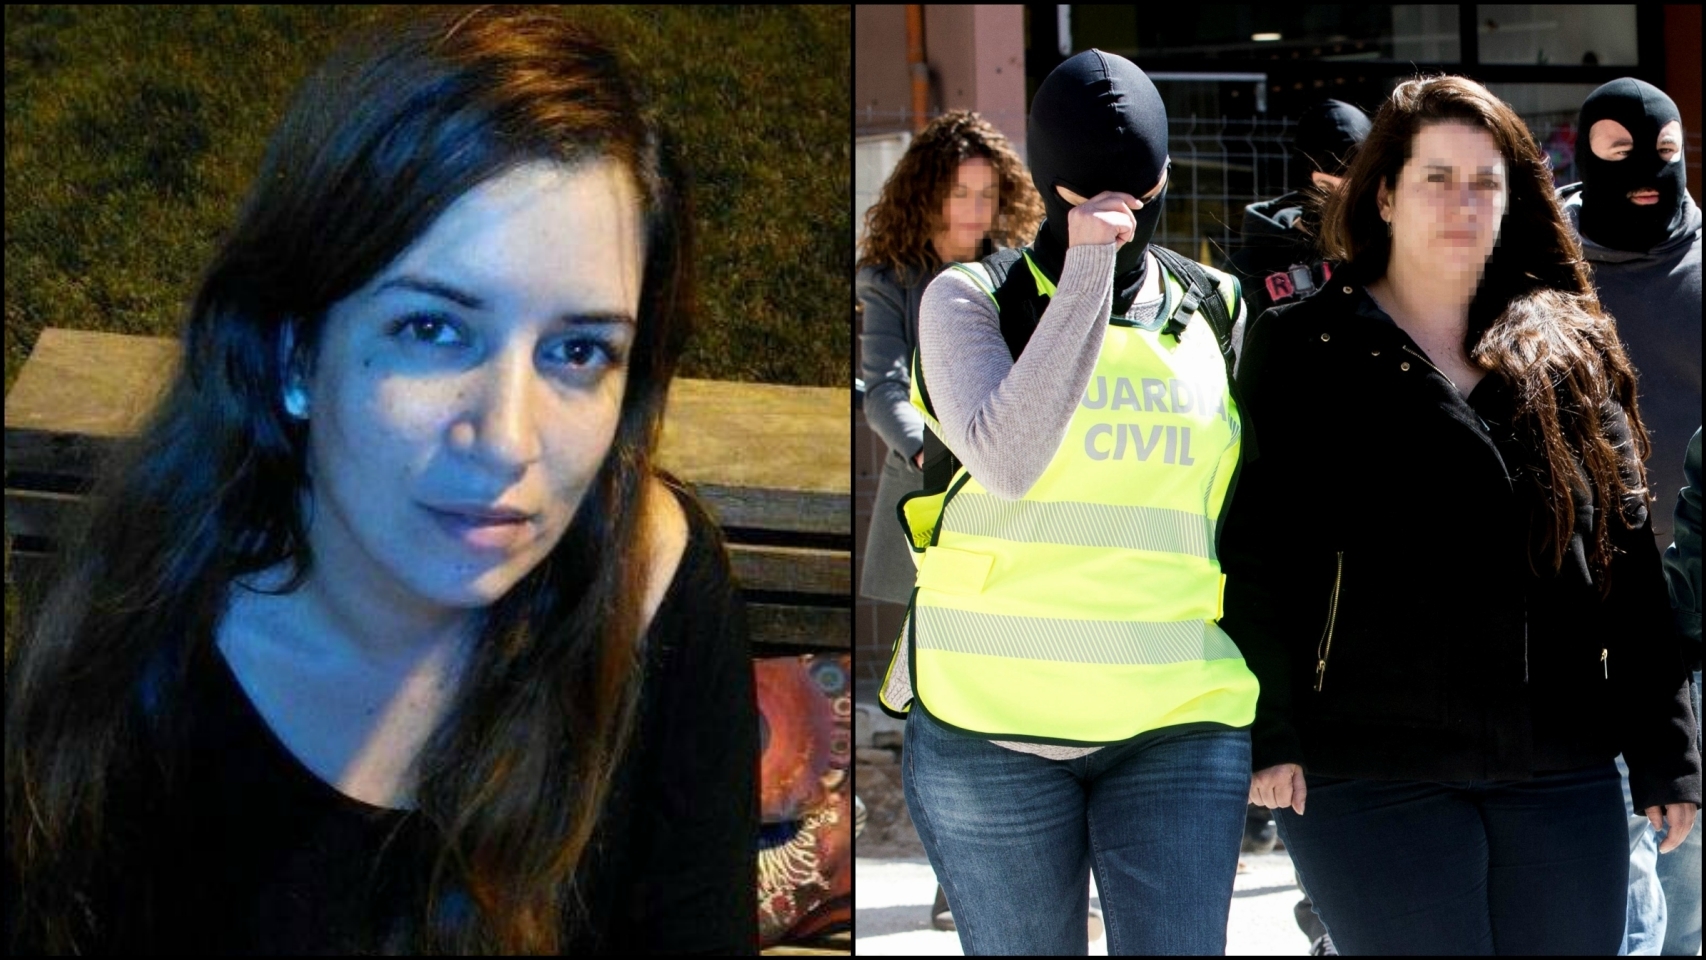 La miembro de los CDR detenida en Viladecans (Barcelona), Tamara Carrasco